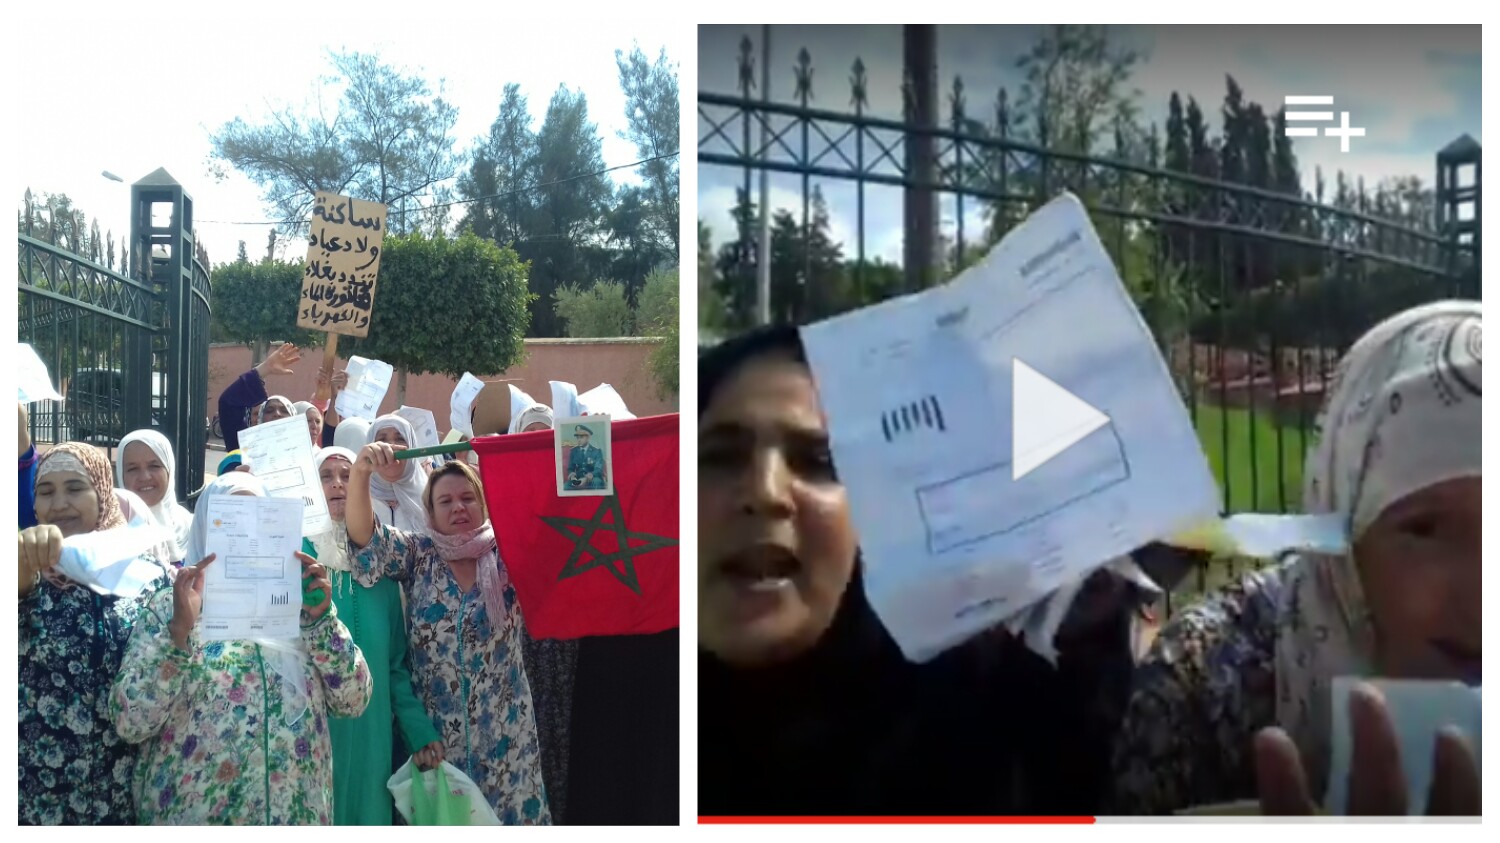 بالفيديو… “العافية” في أسعار فواتير الكهرباء يخرج مجموعة من النسوة ببني ملال للاحتجاج وصرخة مؤثرة لمحتجة